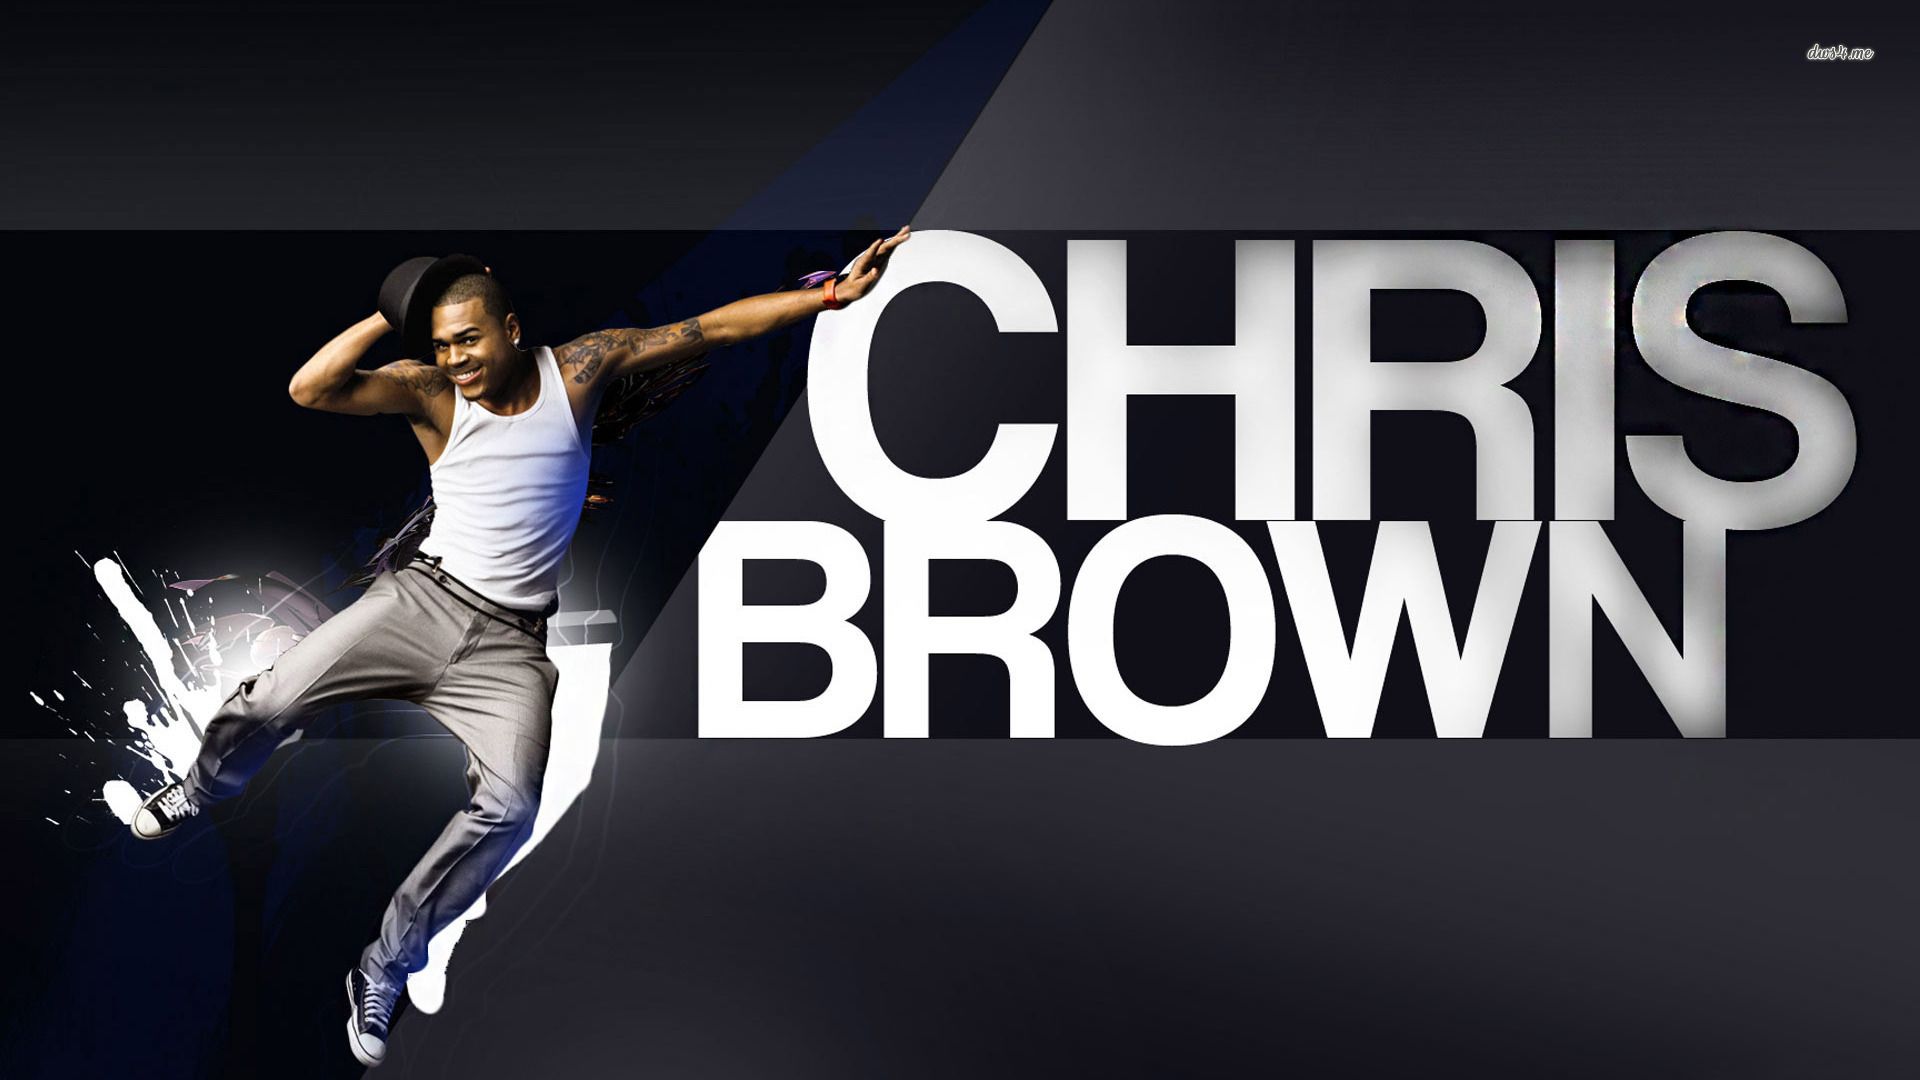 Chris Brown wallpaper HD background download desktop iPhones